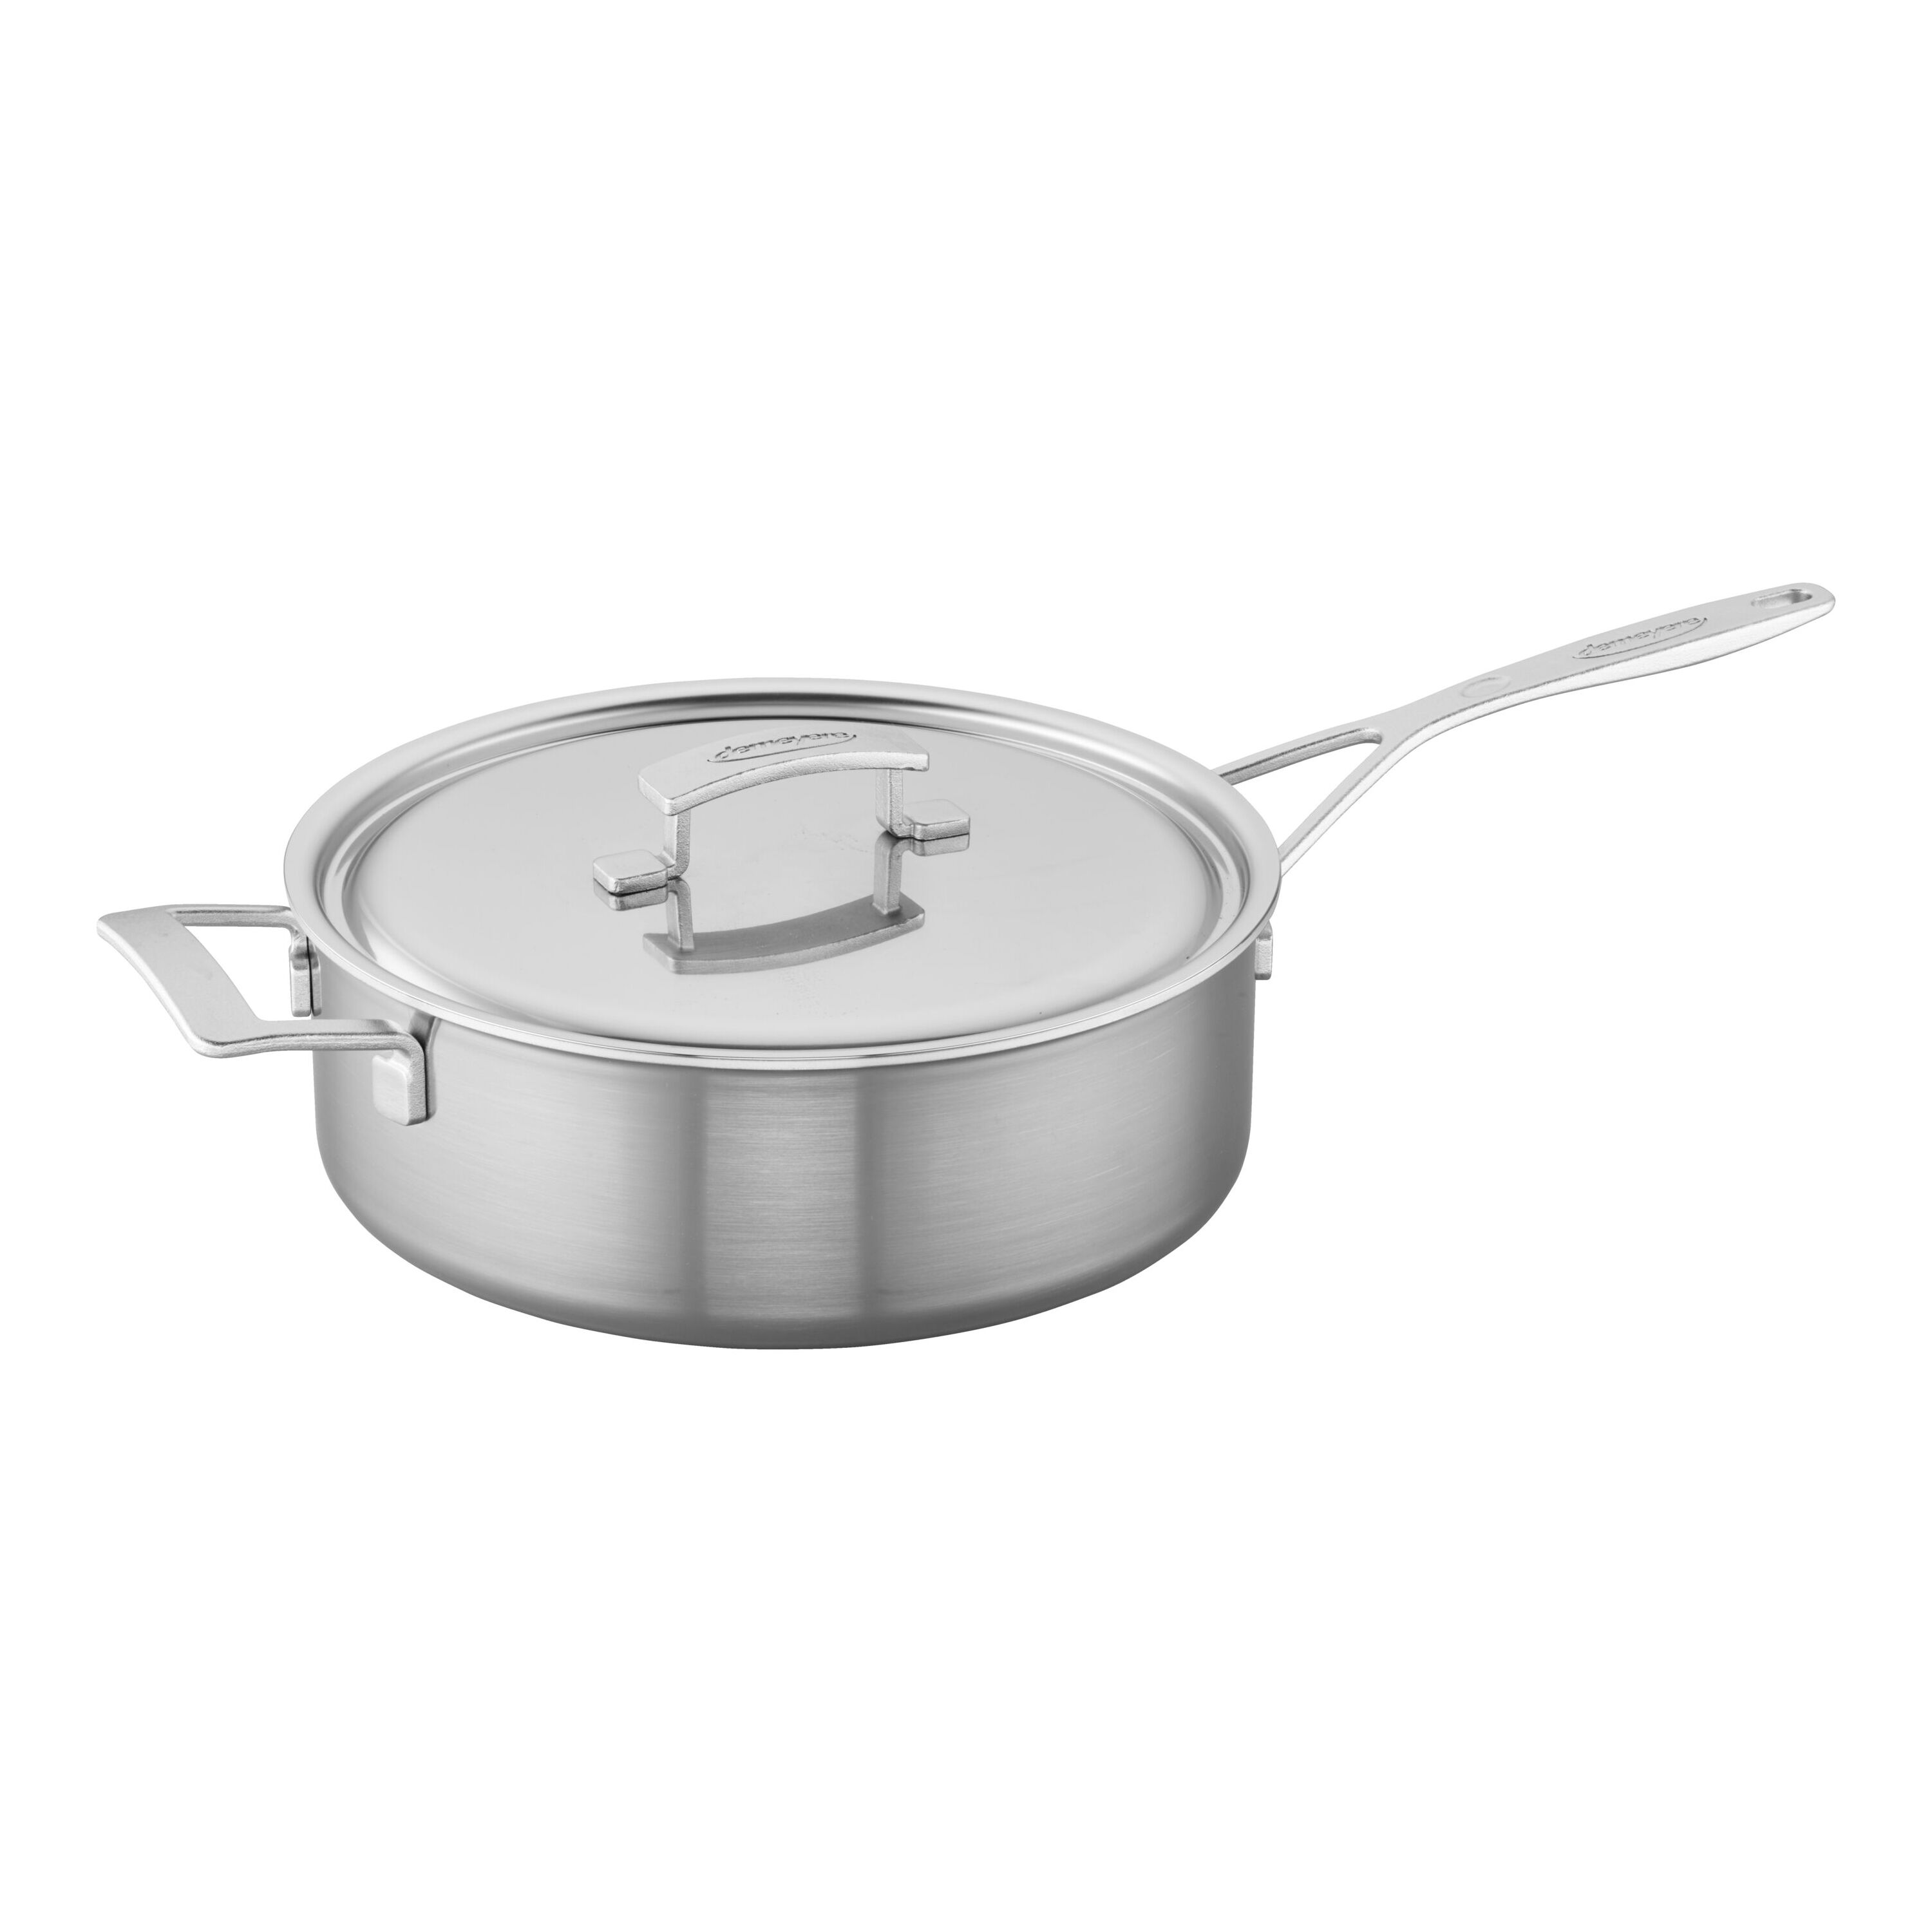  Sur La Table Classic 5-Ply Stainless Steel Sauté Pan, 5 Qt,  Silver: Home & Kitchen